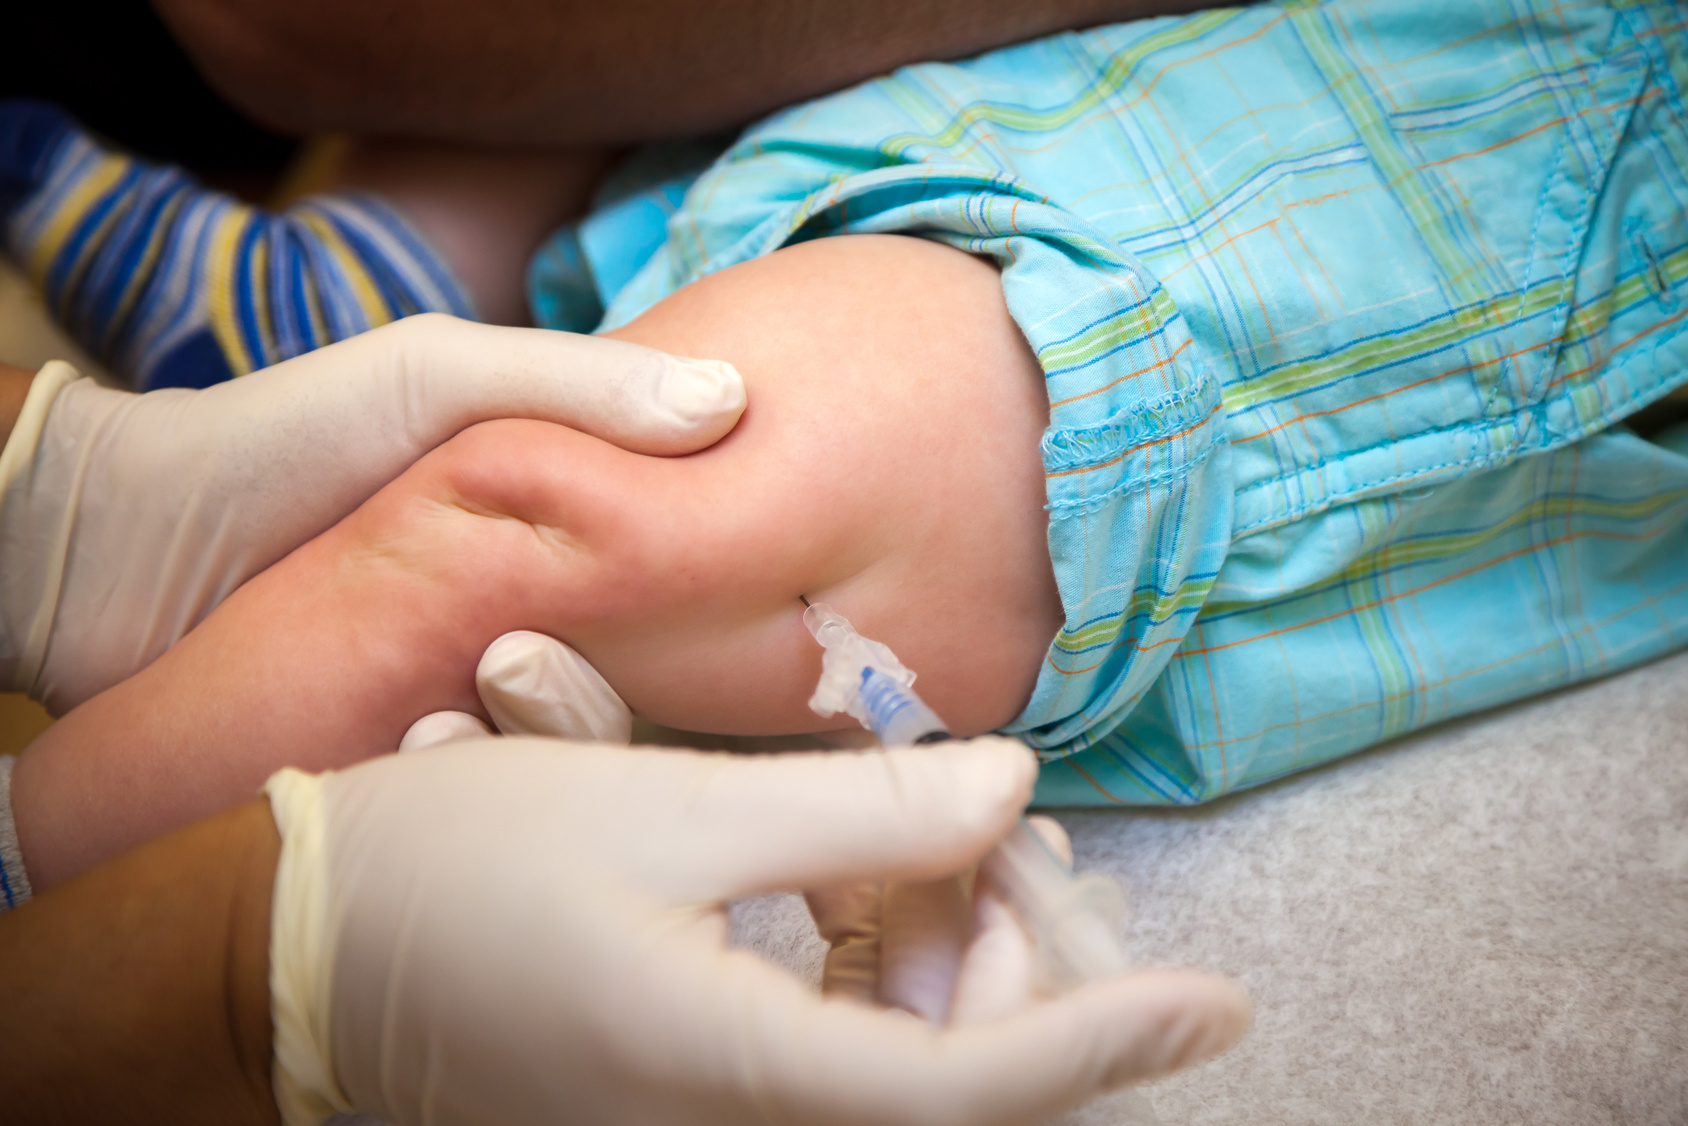 Прививка в ножку ребенку. Вакцинация детей в бедро детям. Место введения прививки АКДС детям. Уколы маленьким детям.